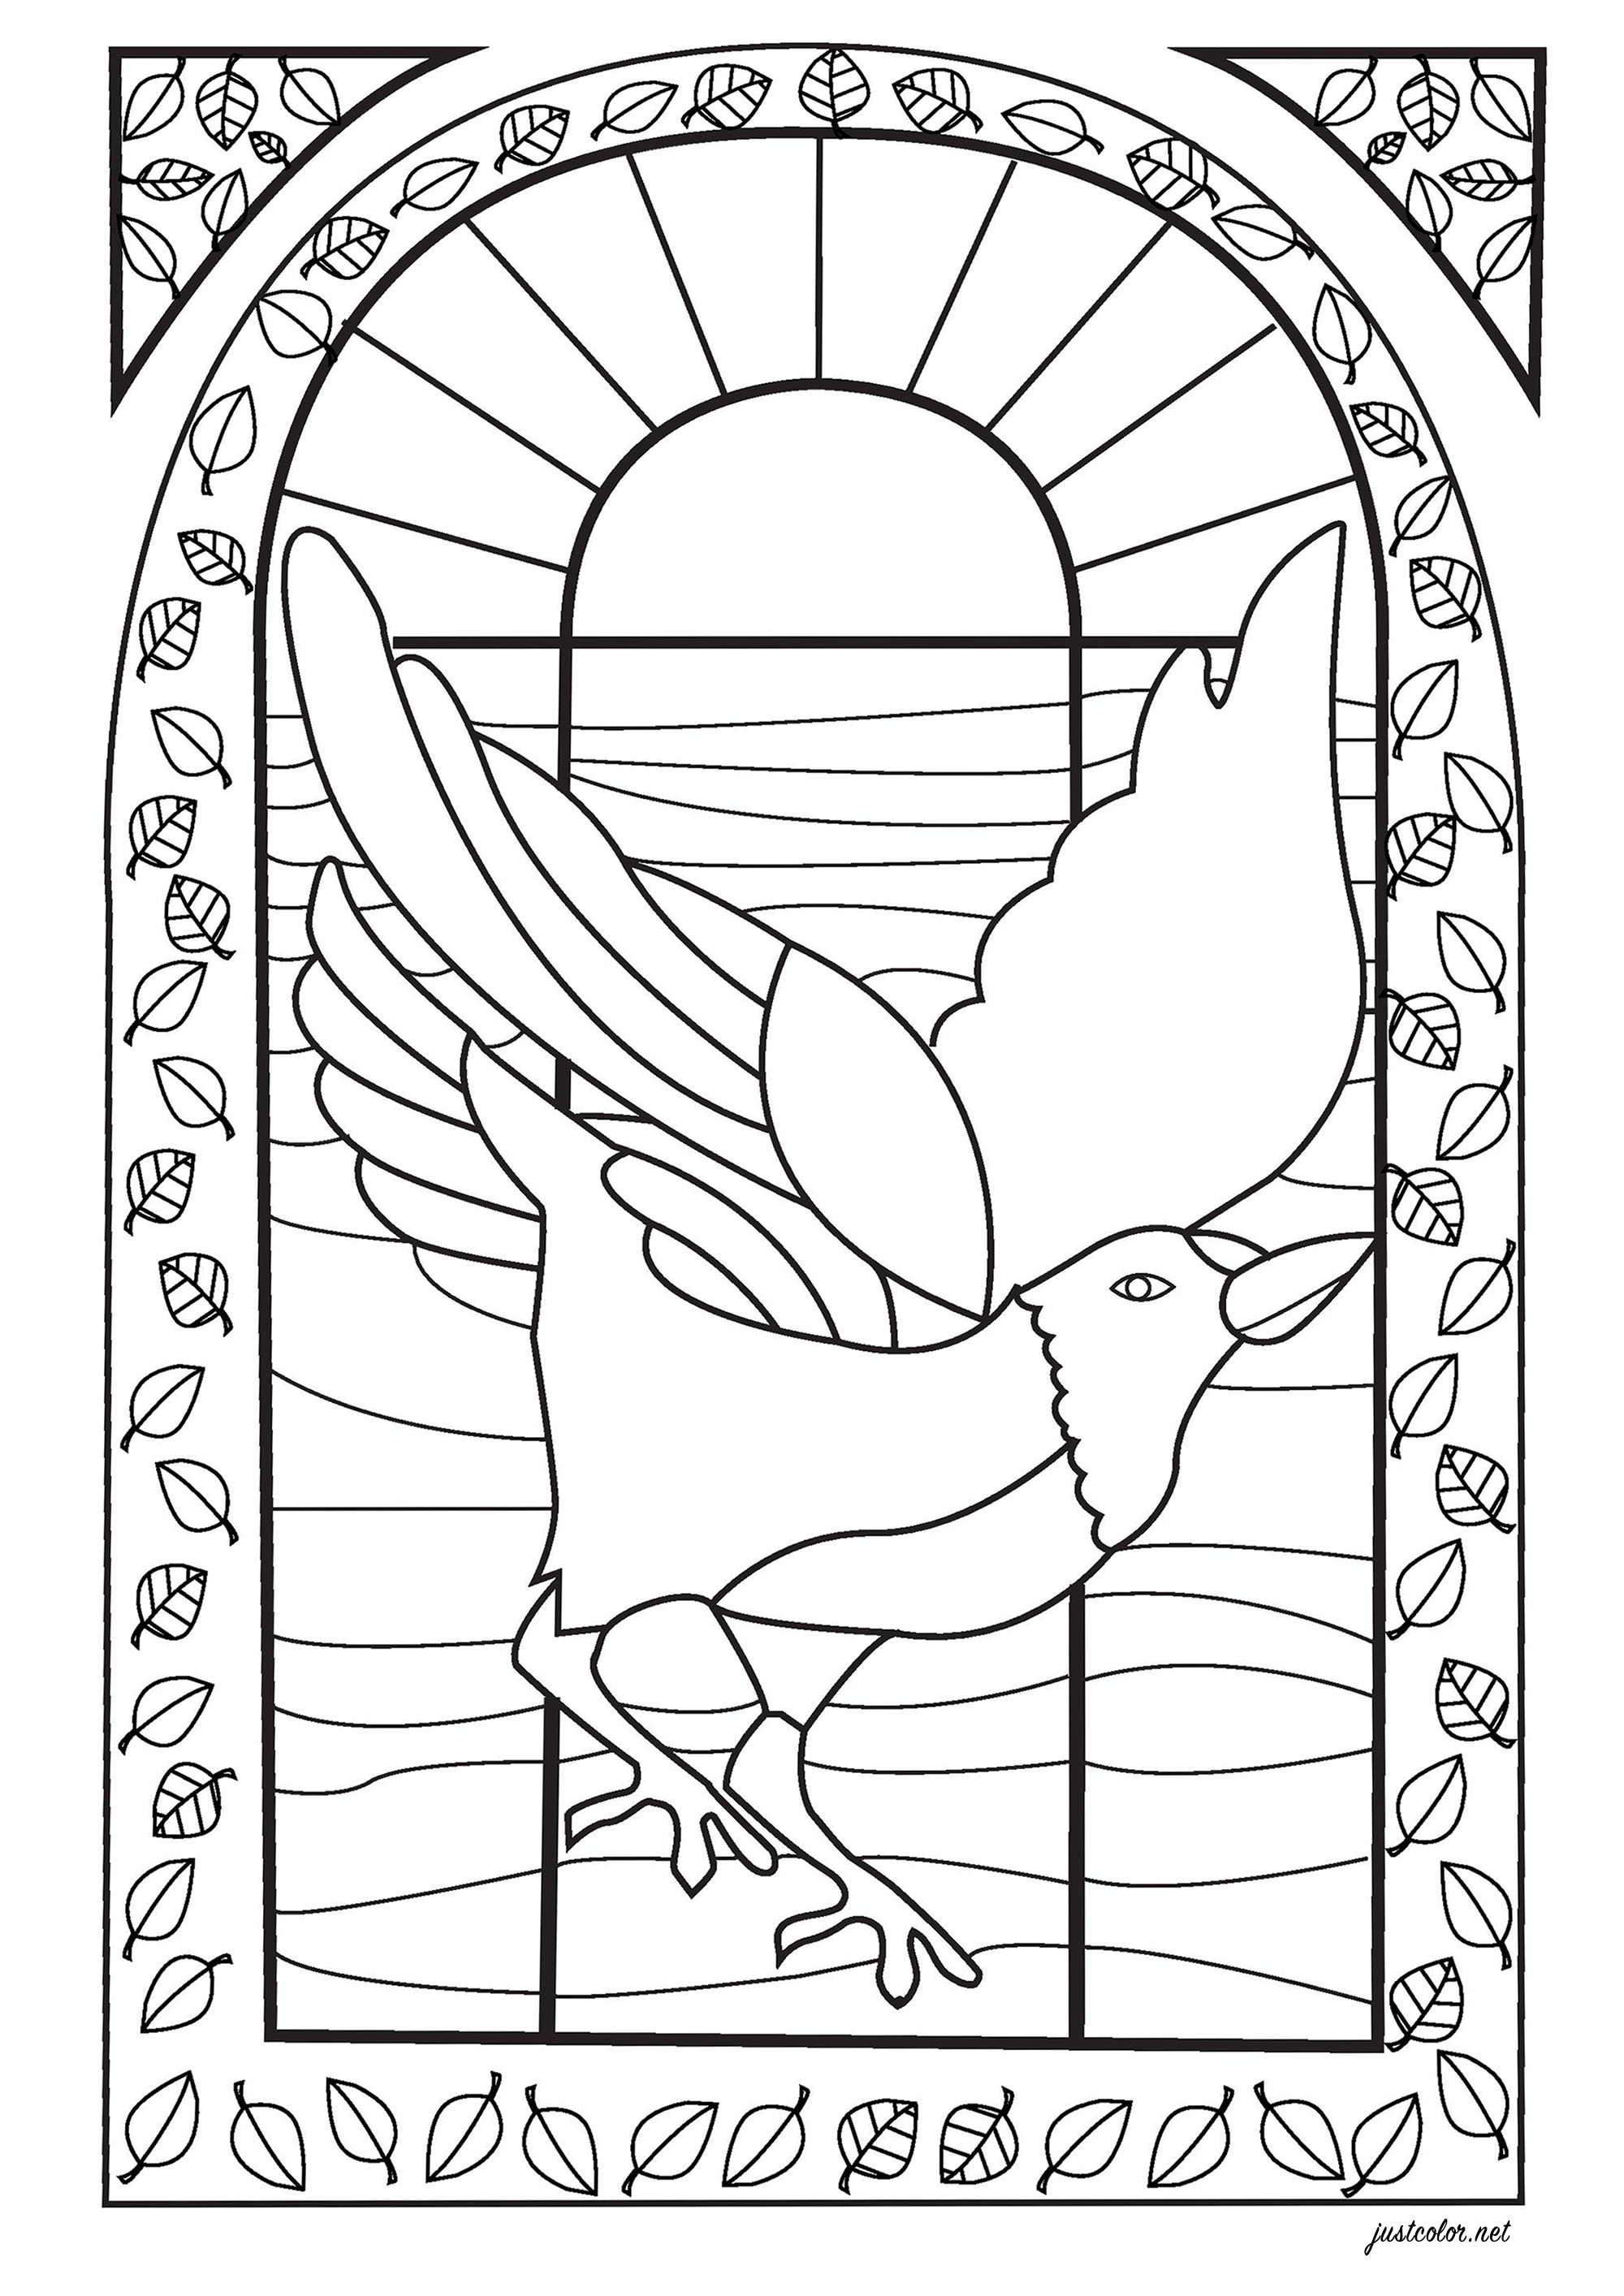 Desenho de um pássaro para colorir, desenhado ao estilo de um vitral, Artista : Salomé T